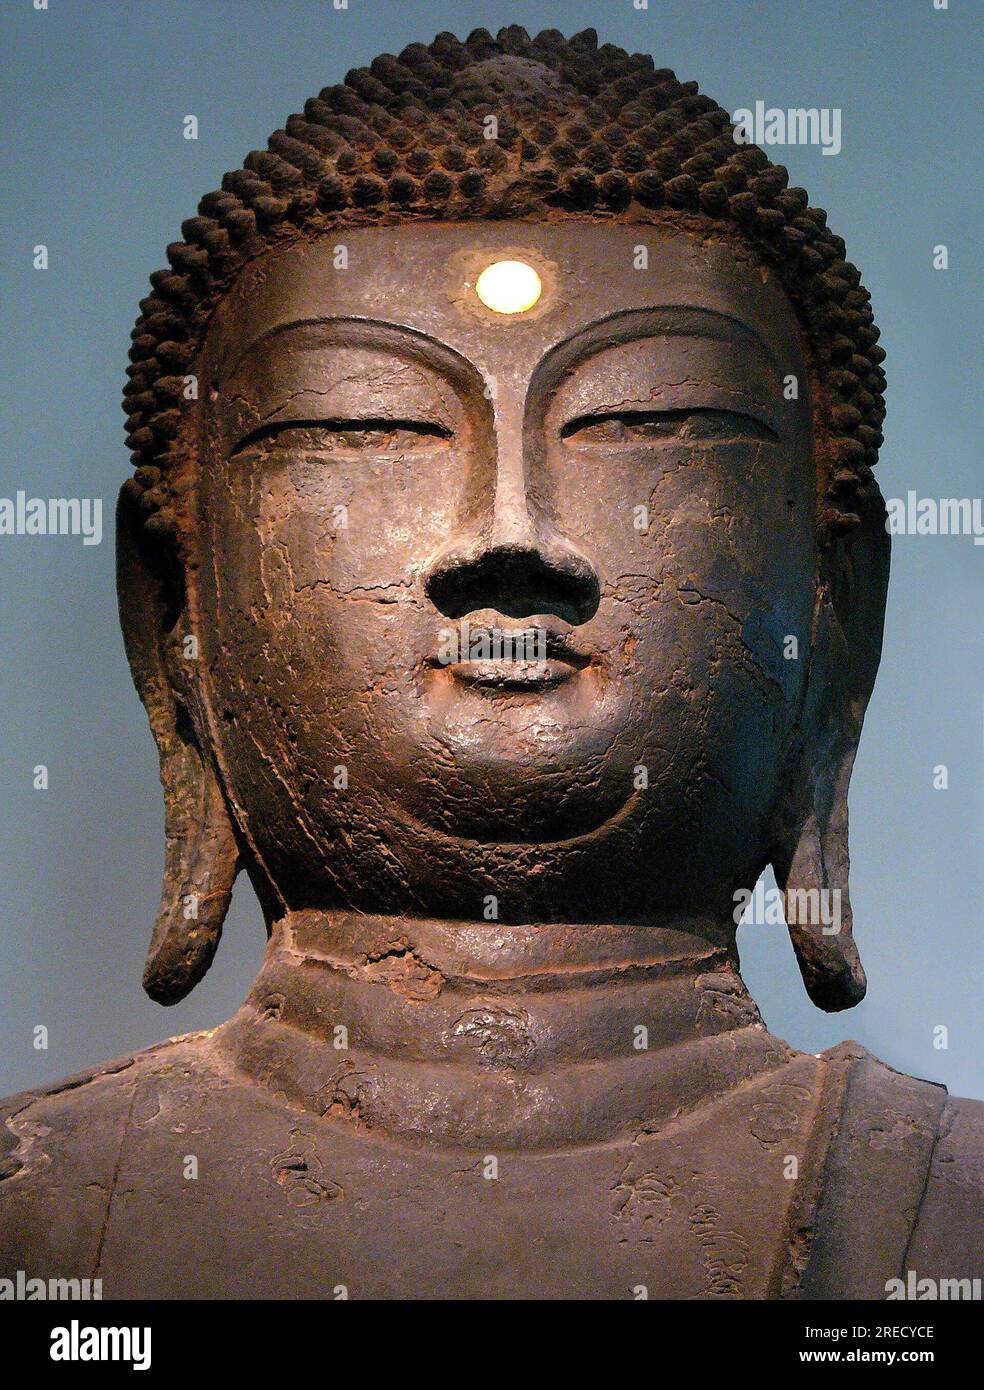 Tete de Bouddha en fer, de la periode Goryeo du Xe siecle, provenant du monastere de Hasachang-dong, Hanam, Gyeonggi-do, Coree. Photographie, Musee National de Seoul, Republique de Coree, 2006. Stock Photo